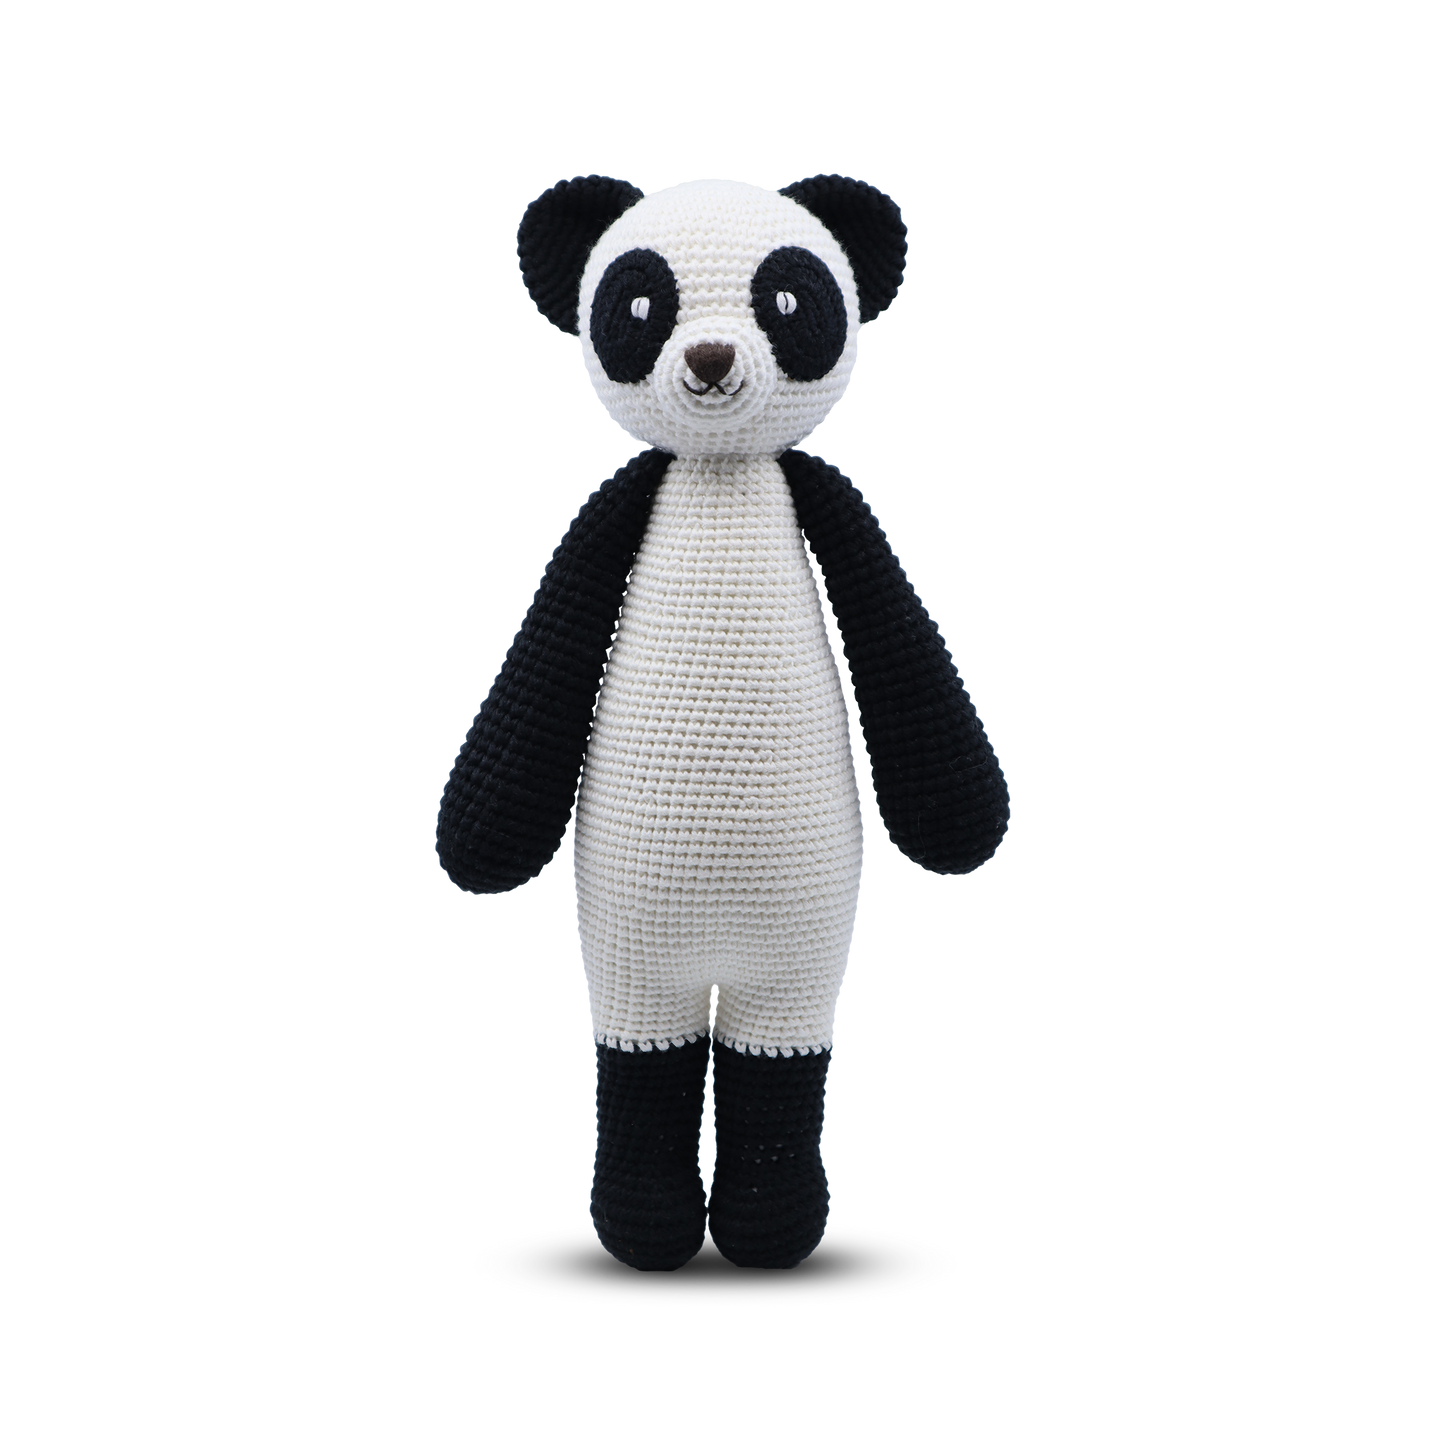 Panda - Large Standing